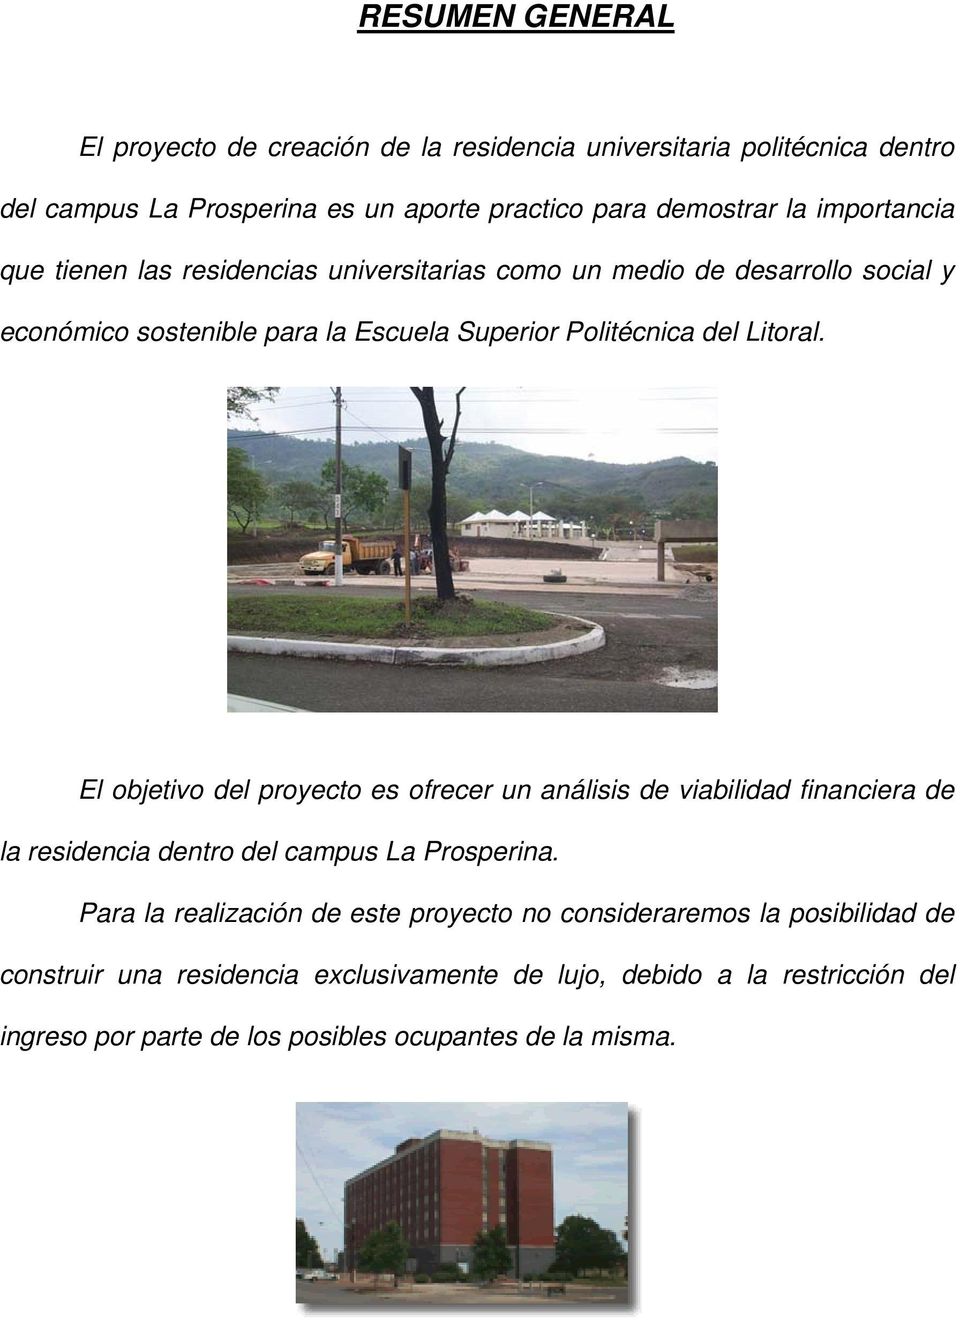 El objetivo del proyecto es ofrecer un análisis de viabilidad financiera de la residencia dentro del campus La Prosperina.